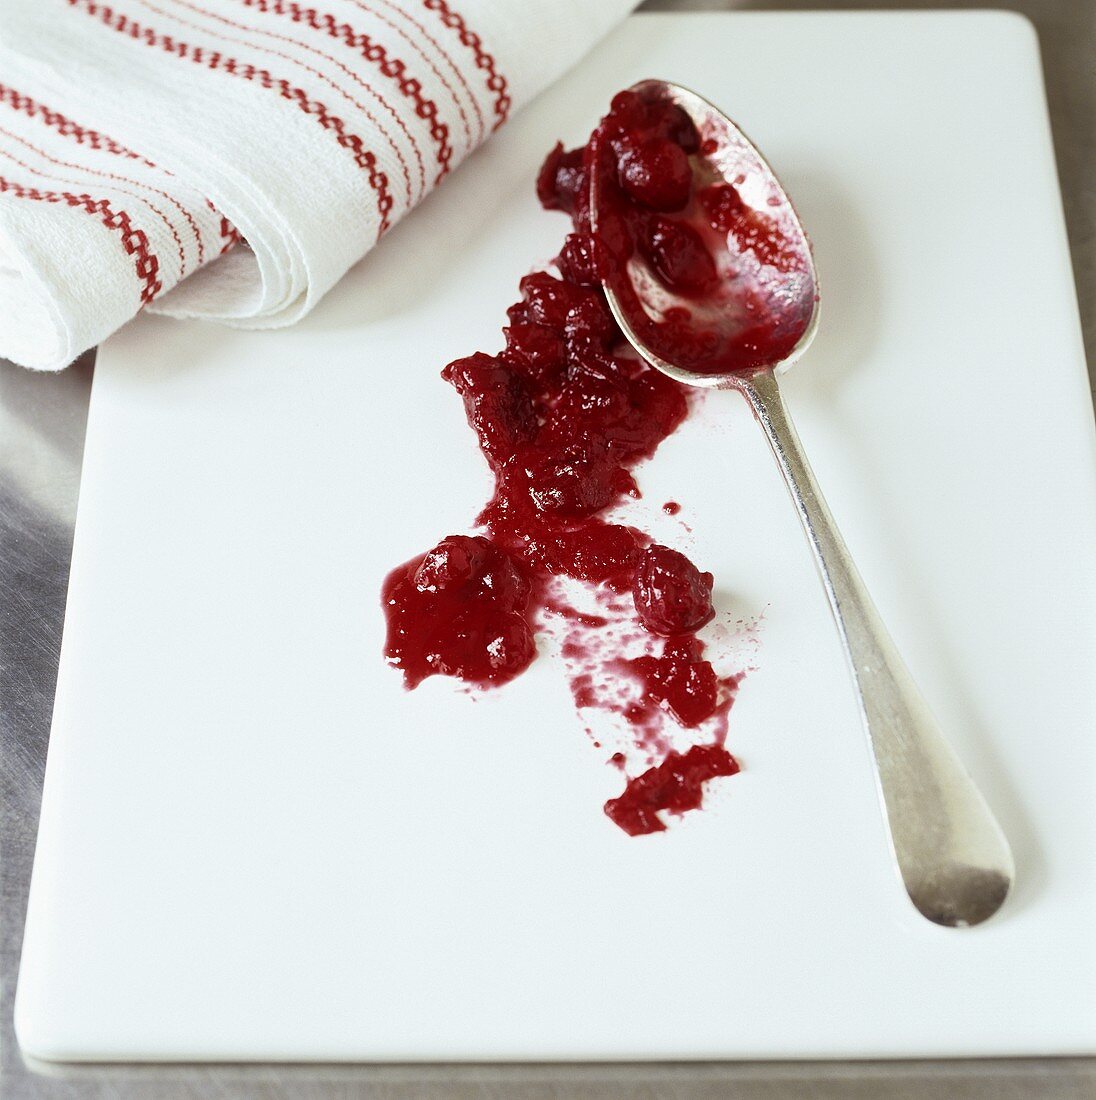 Cranberrysauce mit Löffel